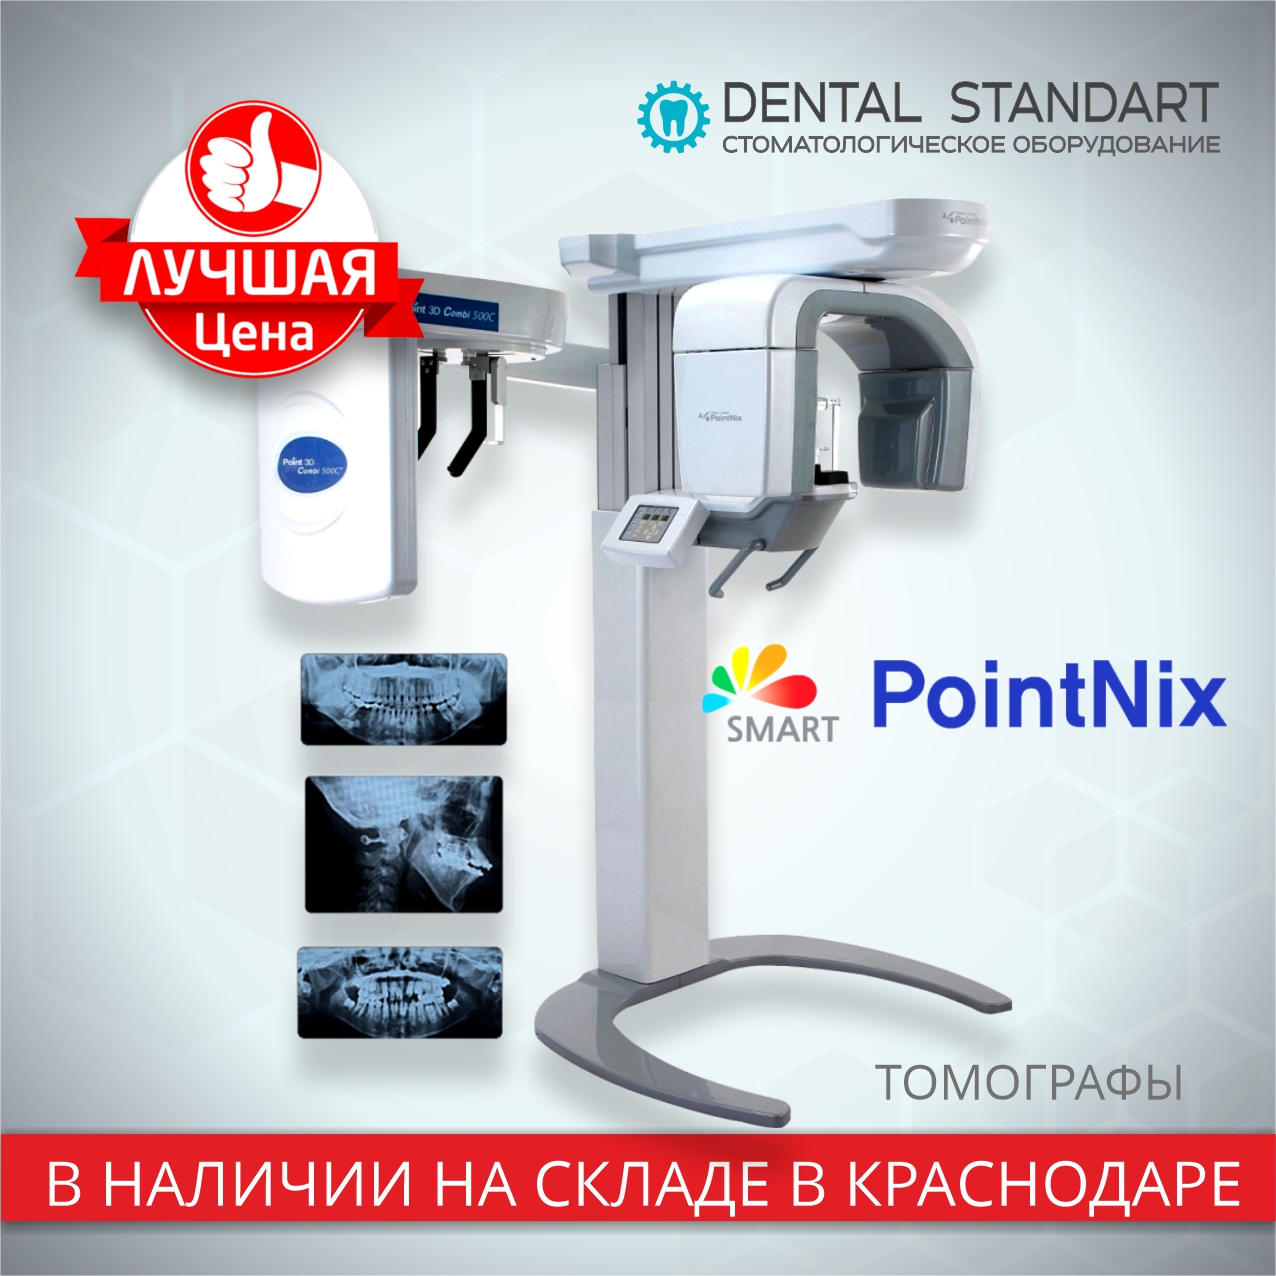 томографы Pointnix